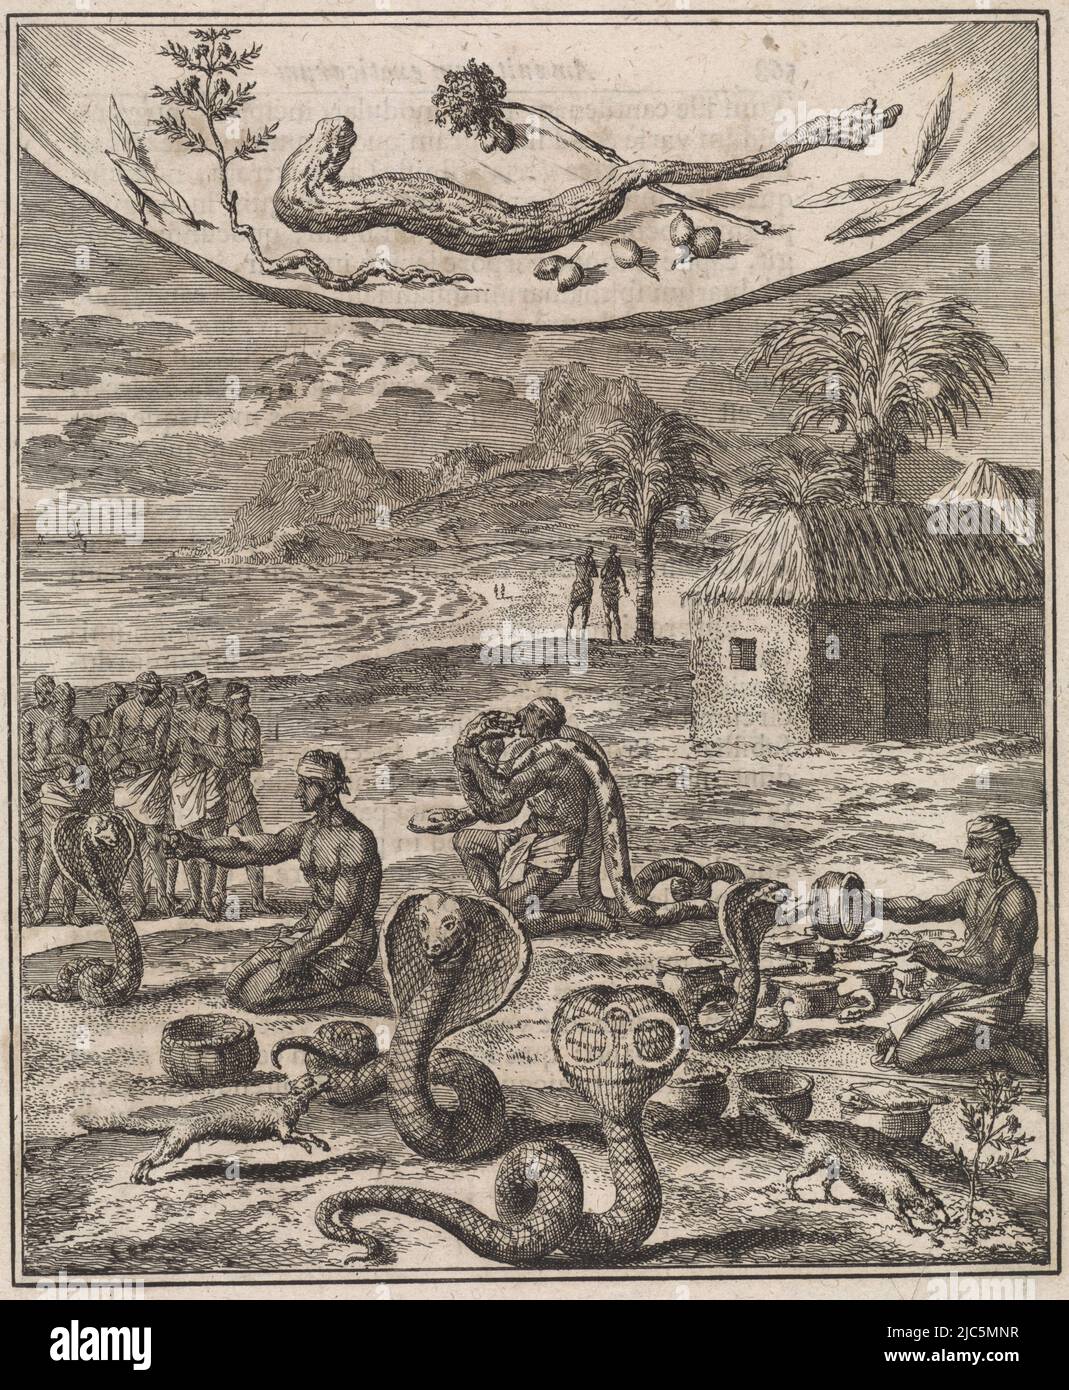 Charmers de serpent indien, imprimeur: Jan Luyken, éditeur: H.W. Meyer, imprimeur: Amsterdam, éditeur: Lemgo, 1712, papier, gravure, h 225 mm × l 176 mm Banque D'Images